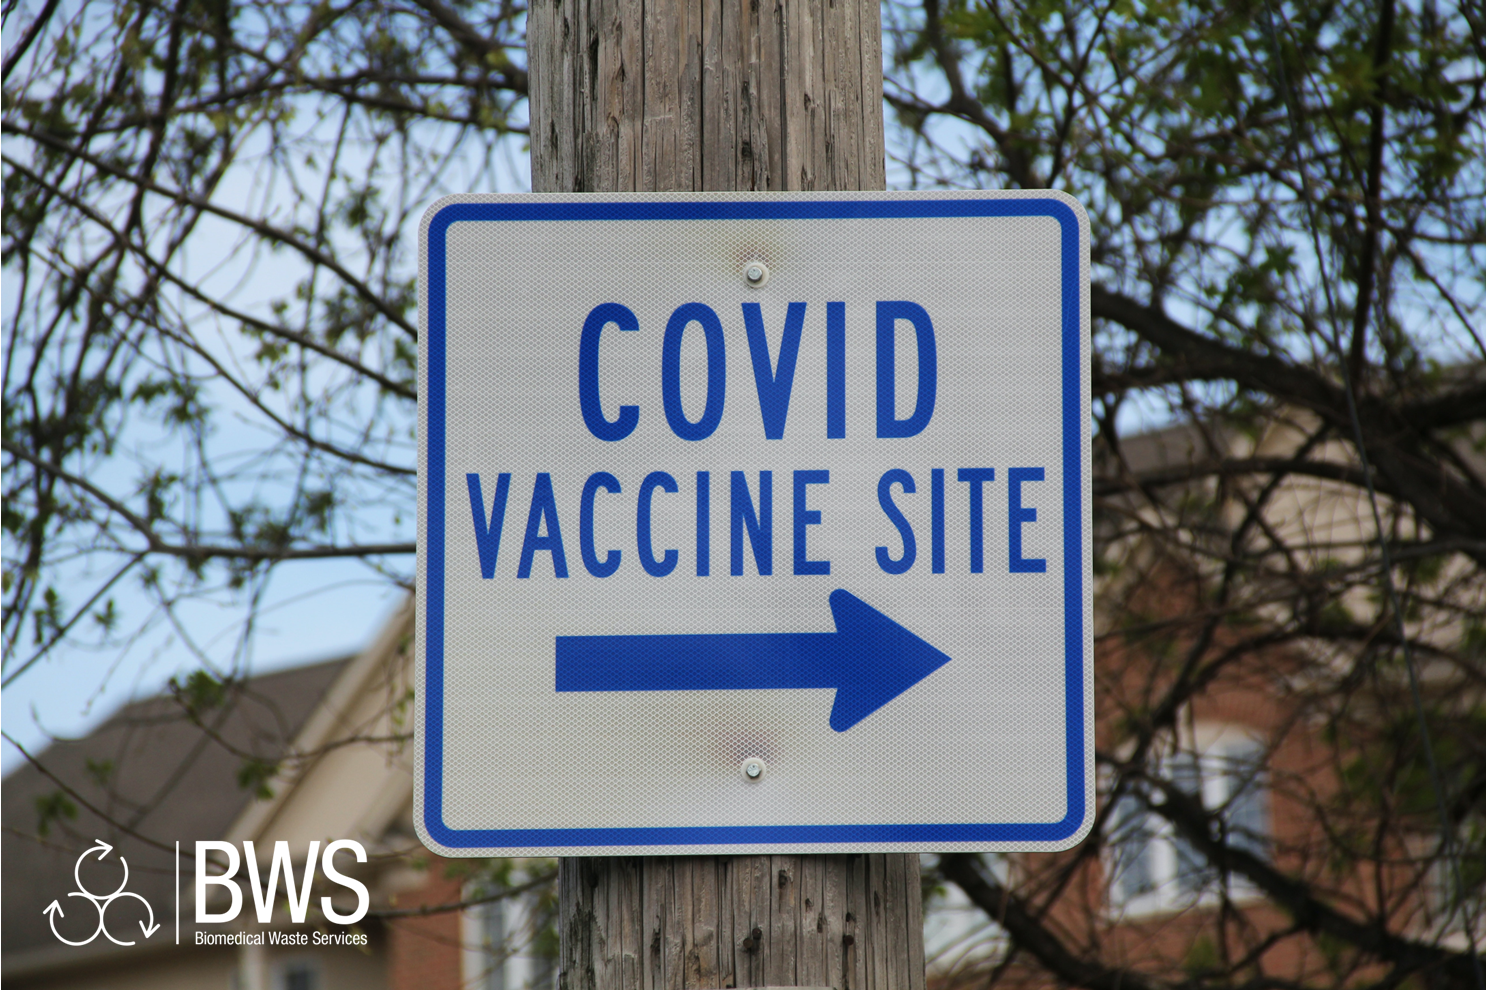 Covid-19 Vaccination Site